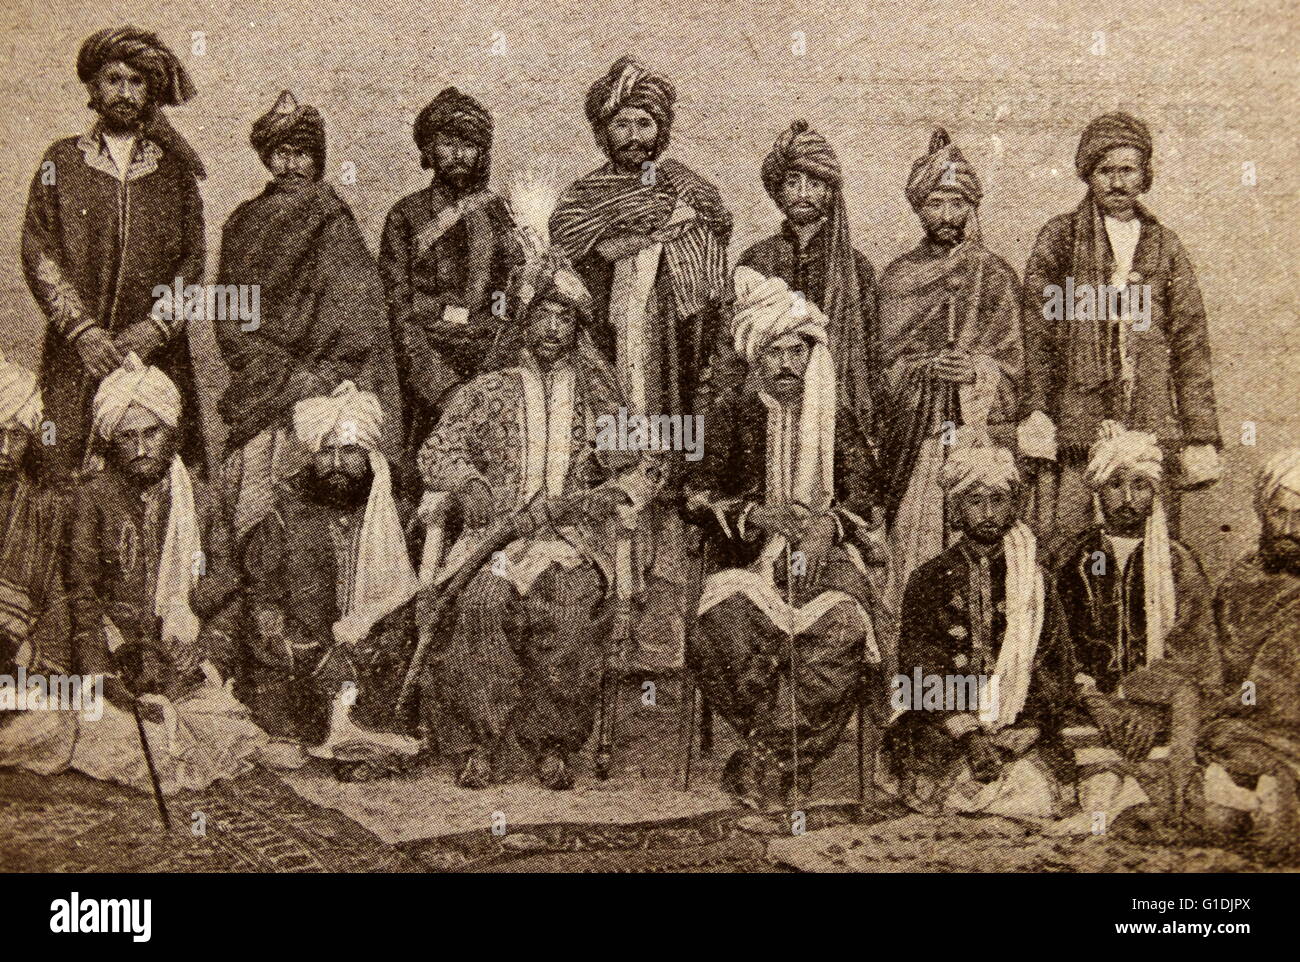 Mir Mahmud Khan II., Herrscher des fürstlichen Staates Kalat in, was jetzt der Baluchistan Provinz Pakistans und seines Gefolges. Vom 19. Jahrhundert Stockfoto